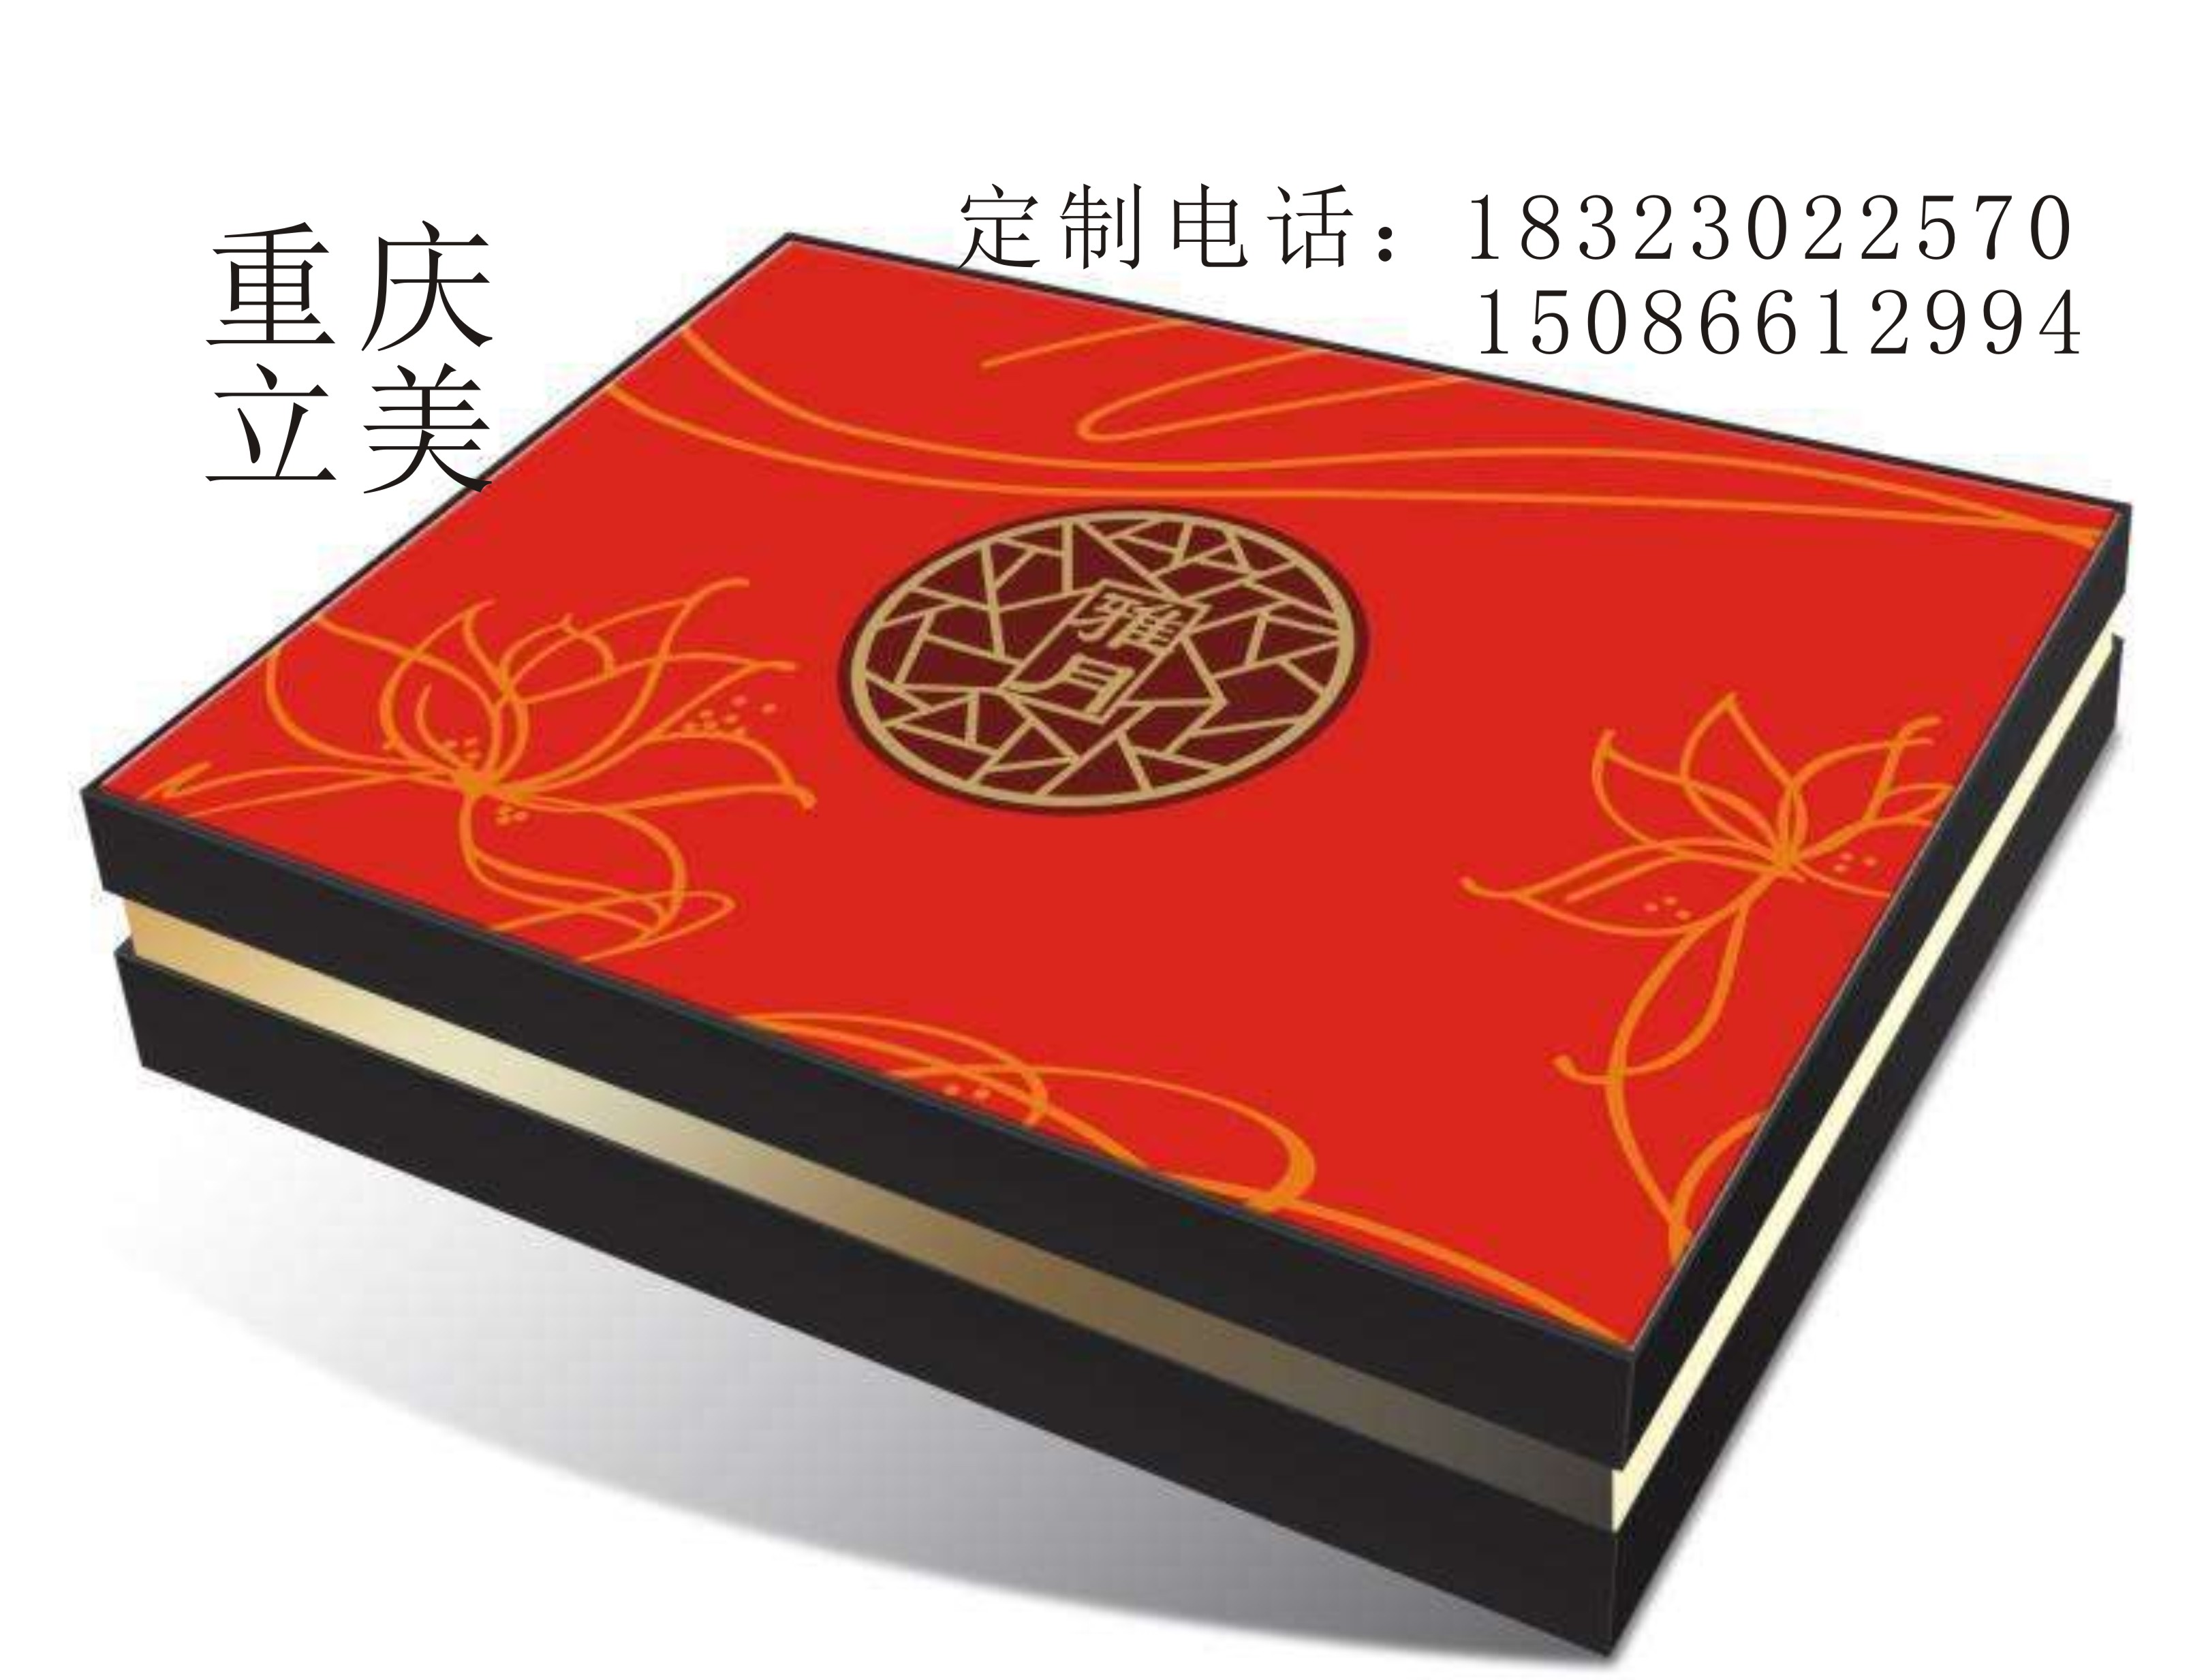 重庆高档包装盒定做厂家供应 OEM月饼工艺盒 重庆酒店月饼盒